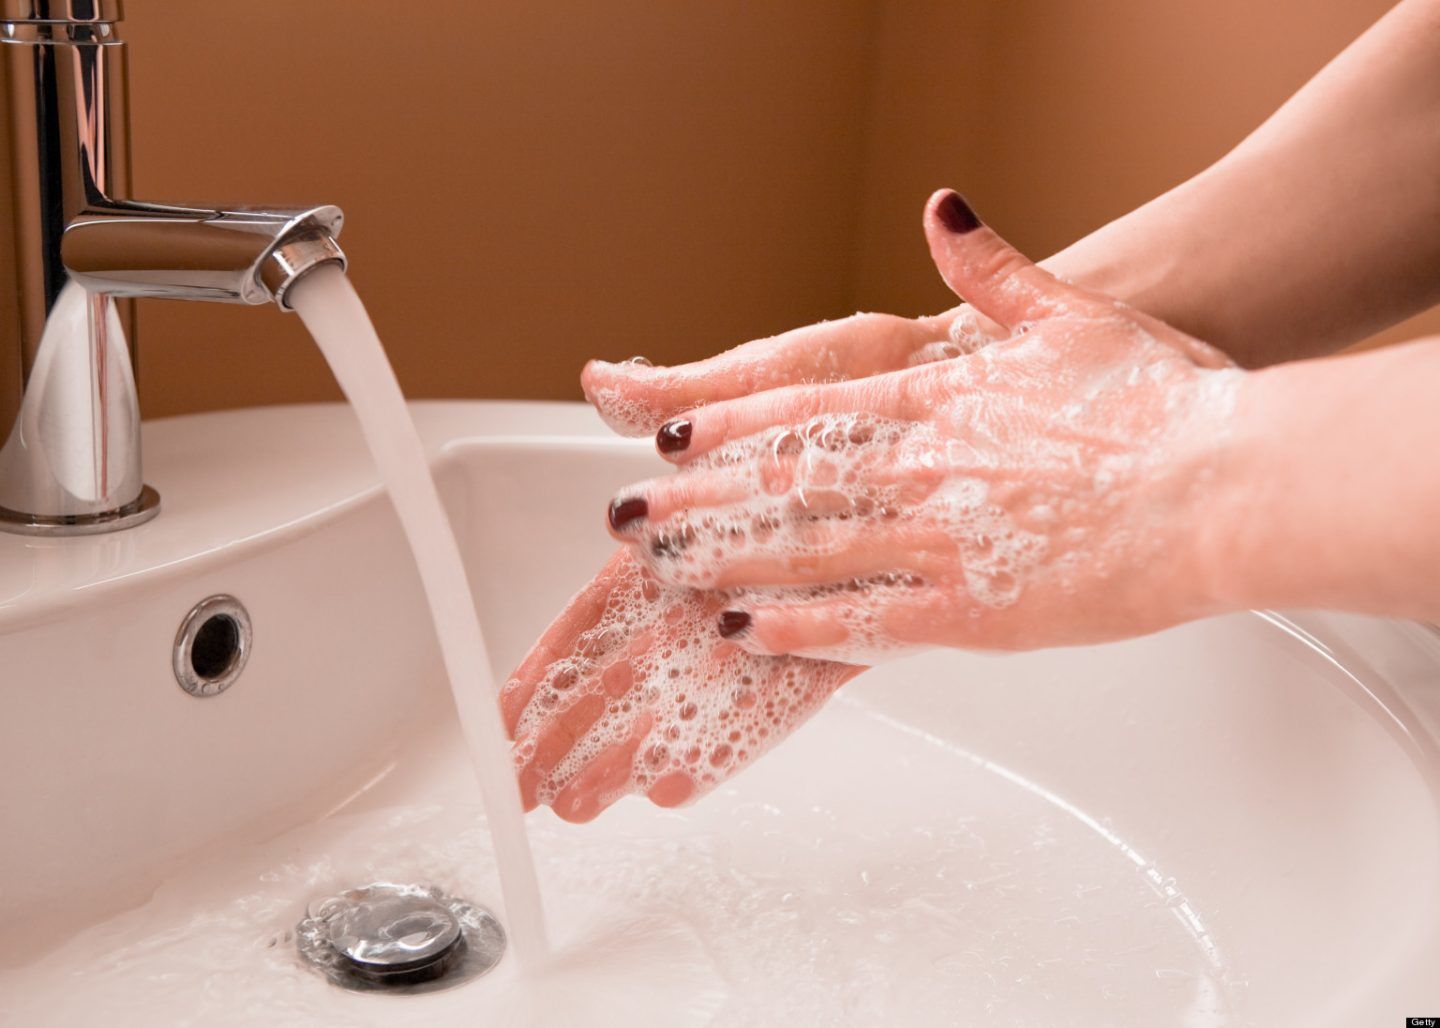 كيف تغسل يديك بشكل صحيح ؟